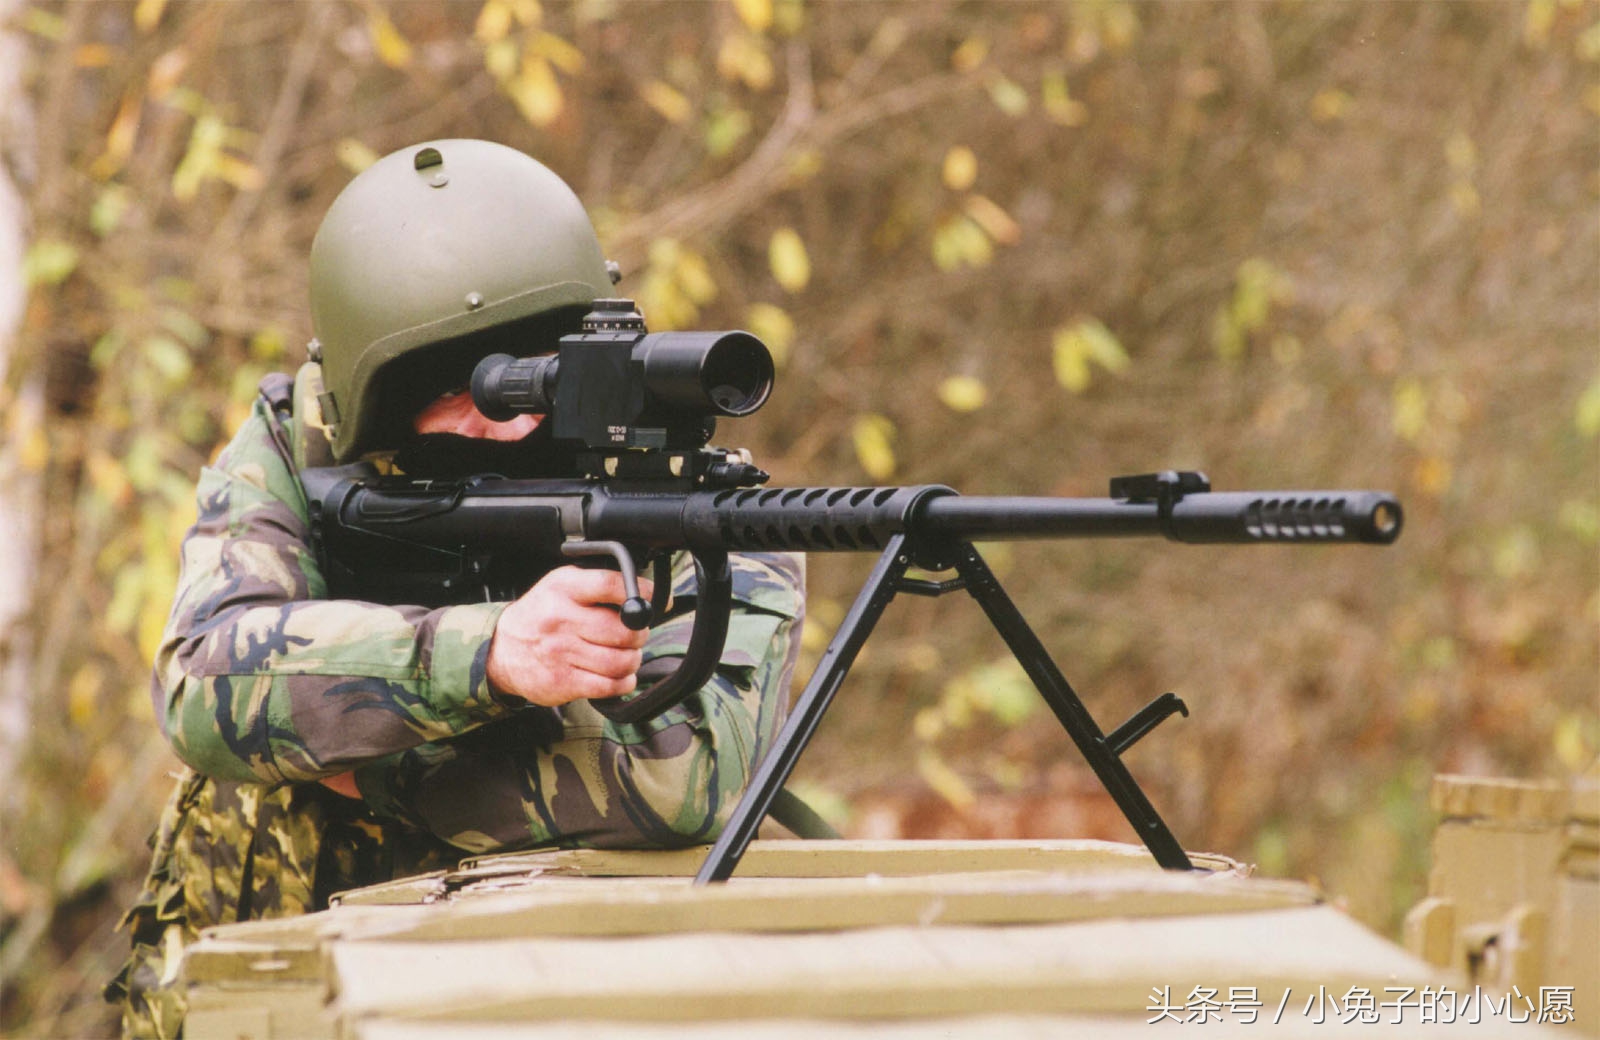 狙击步枪雷明顿msr狙击步枪瑞士nemesis狙击步枪以色列99sr狙击步枪